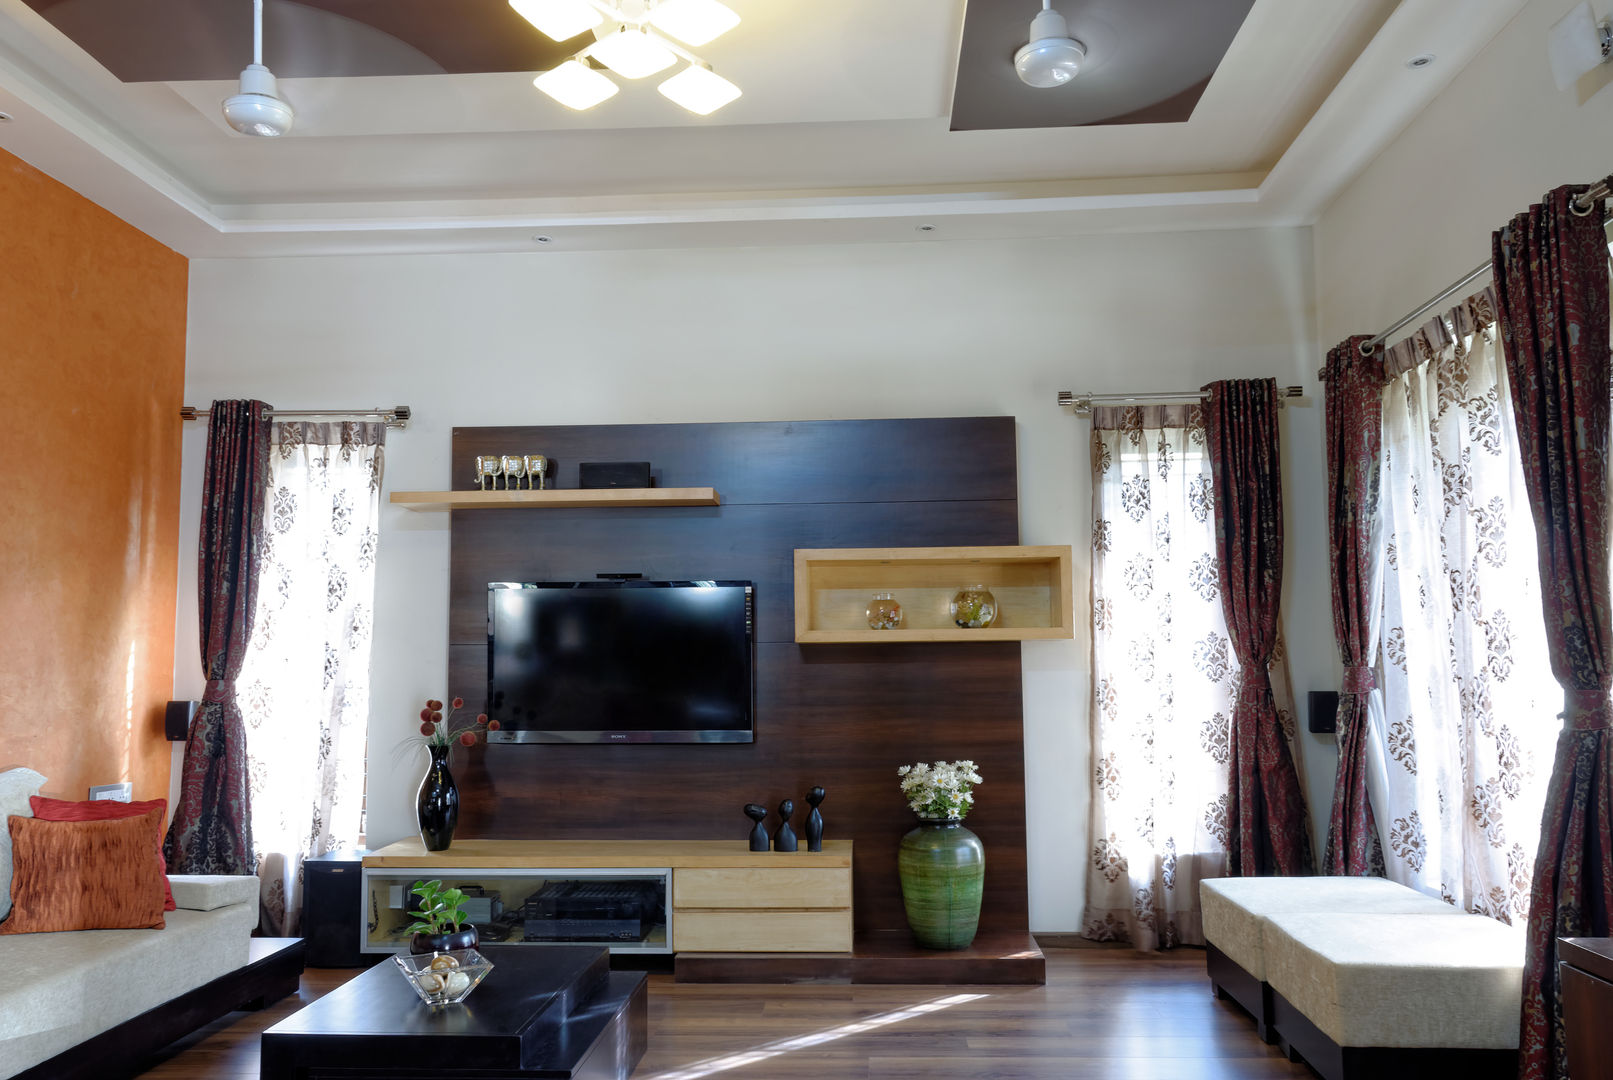 Jaya & Rajesh Cozy Nest Interiors Salas de estilo moderno